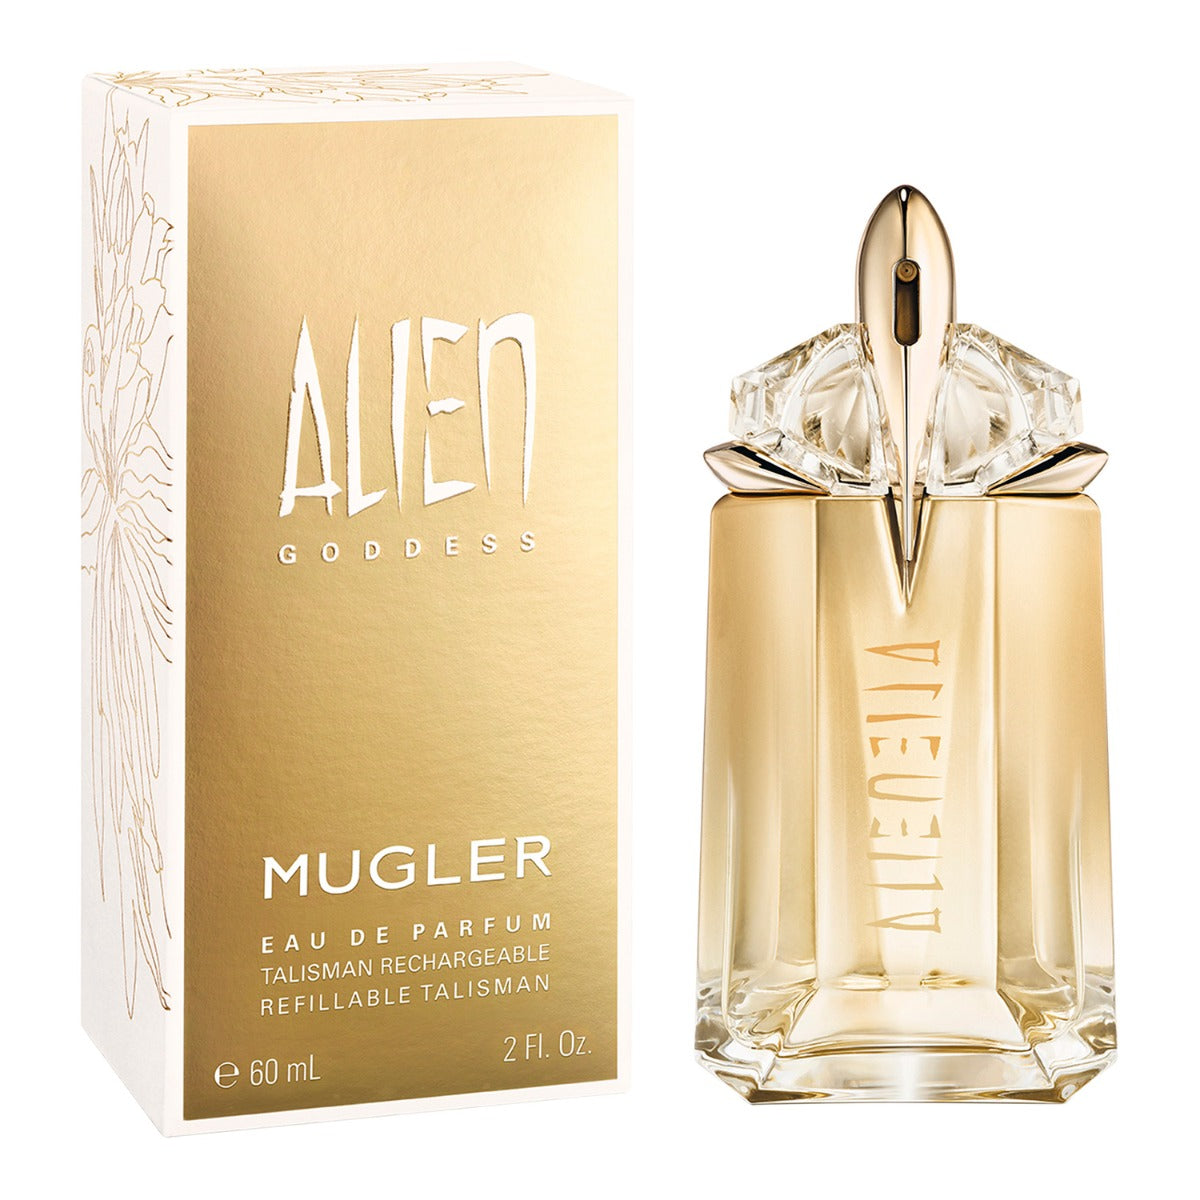 Thierry Mugler Alien Goddess Eau de Parfum For Women